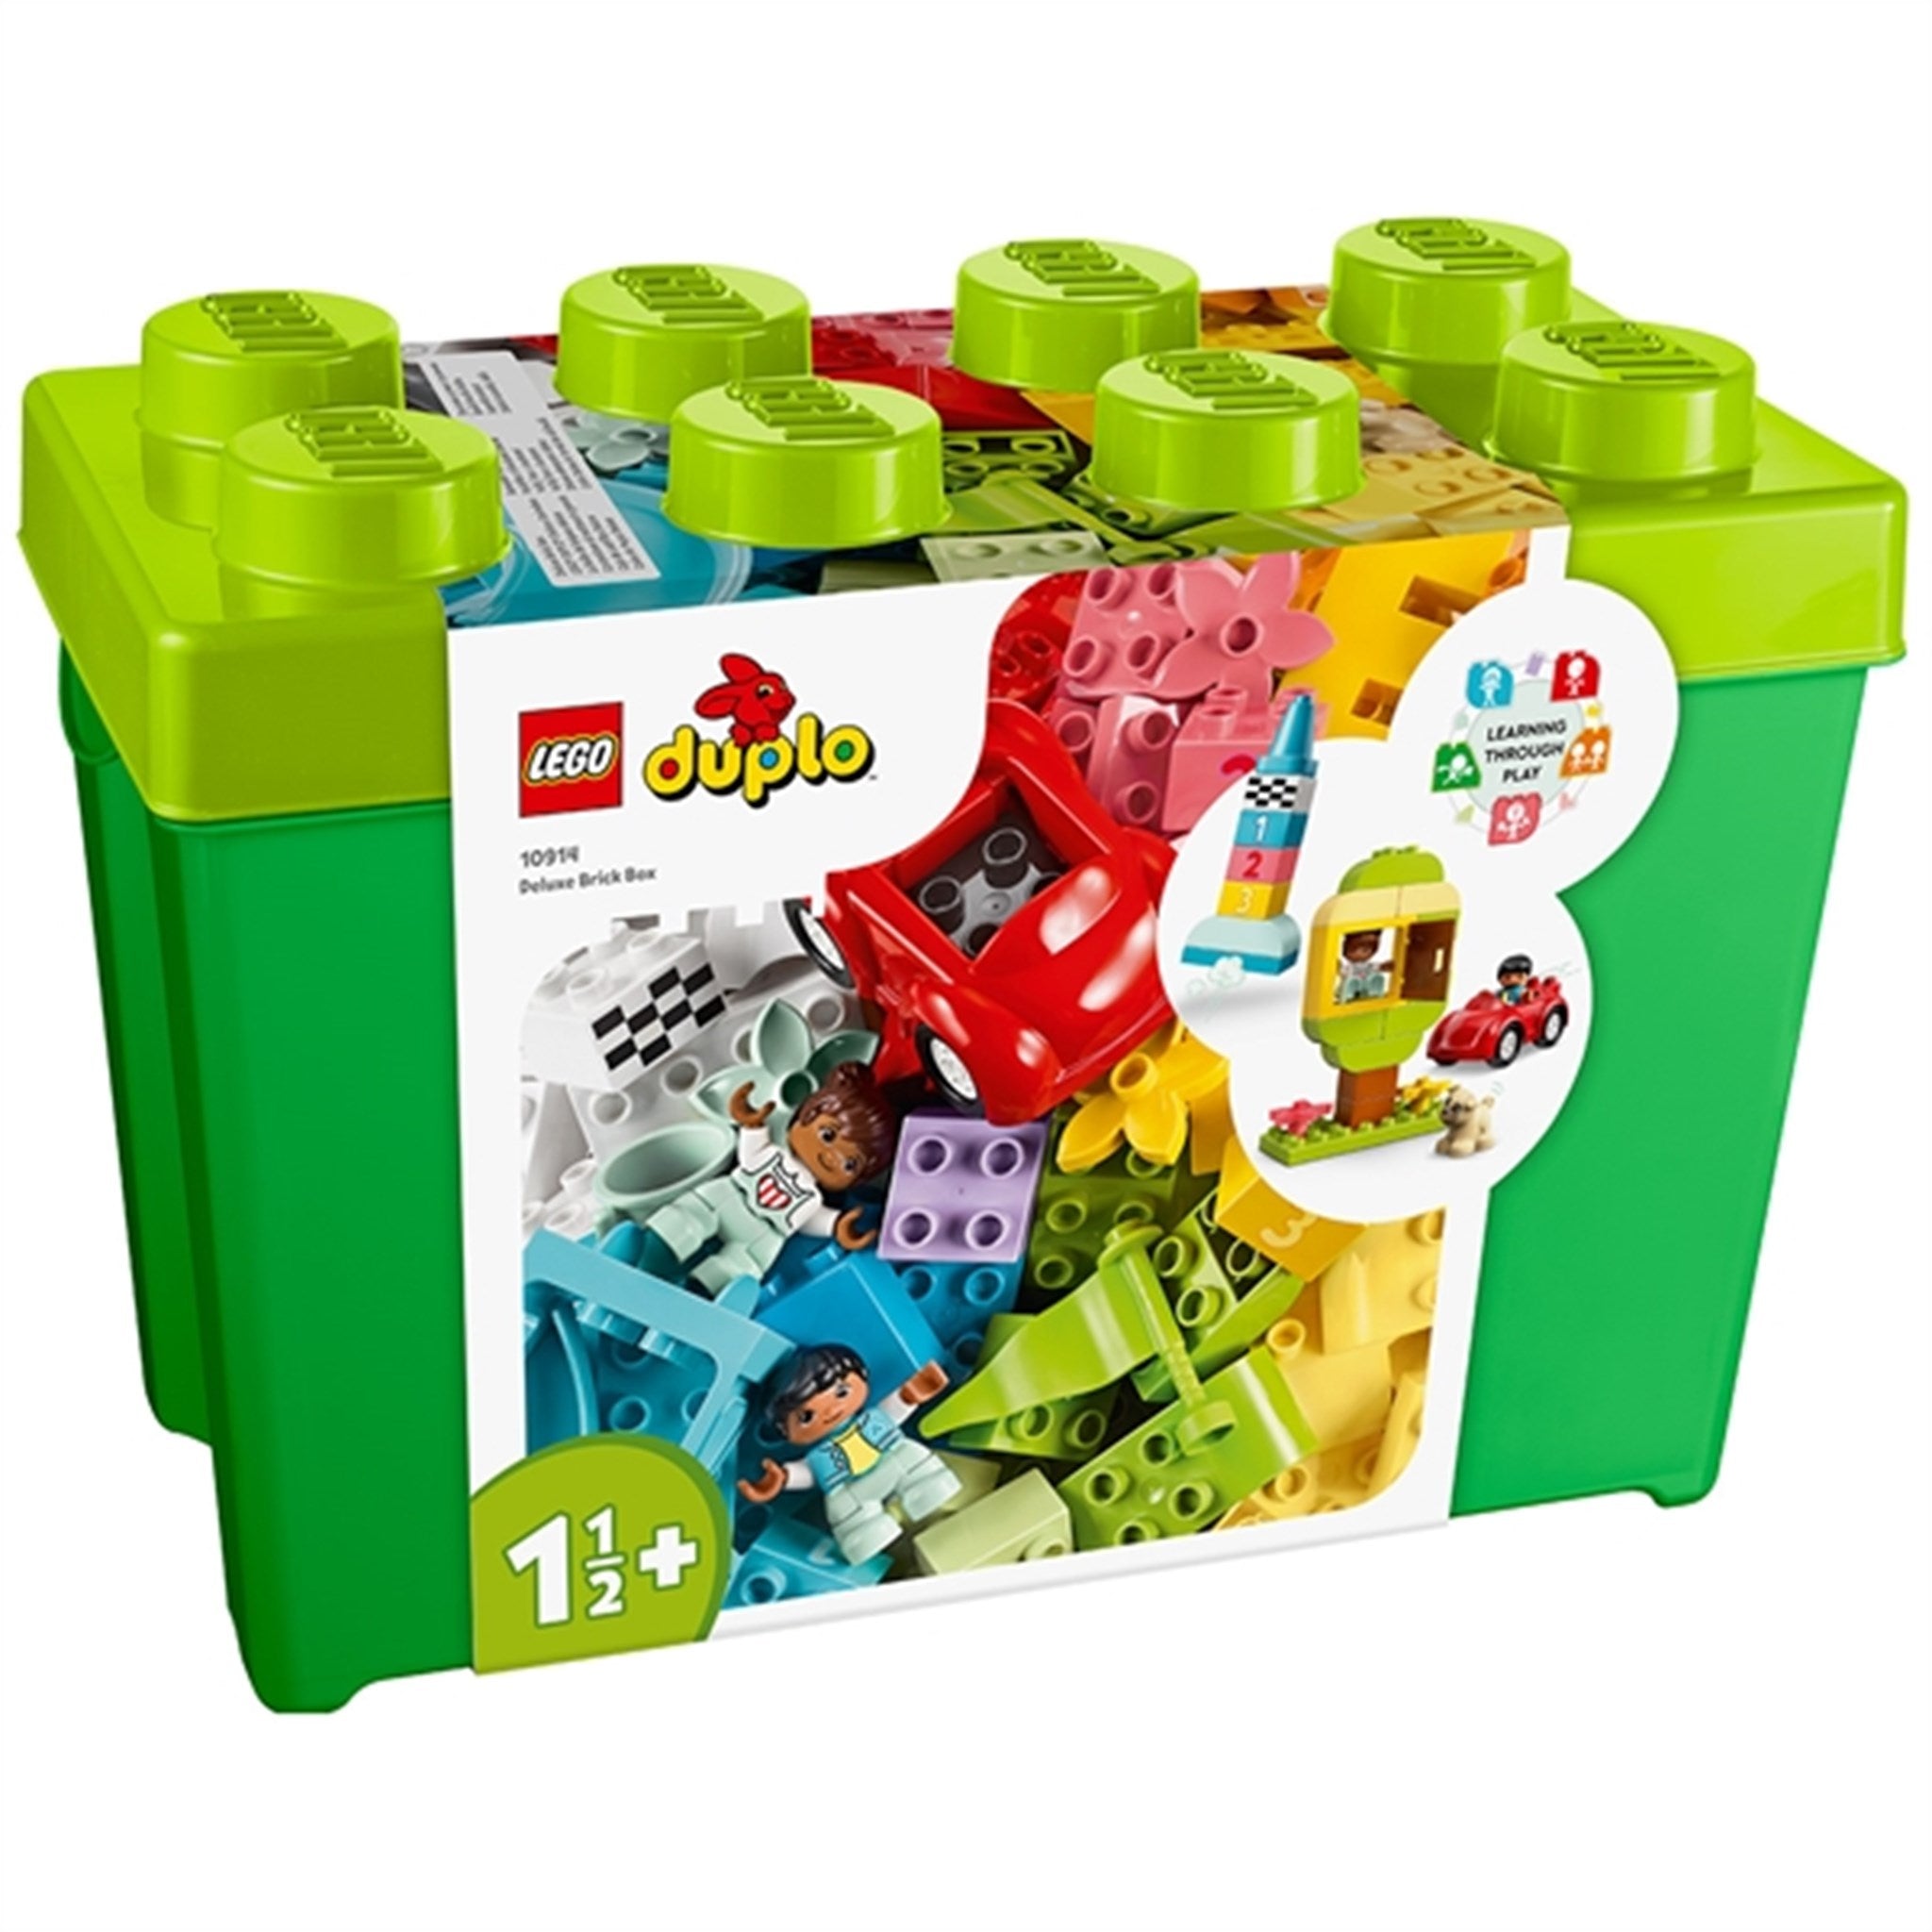 LEGO® DUPLO® Deluxe Brick Box